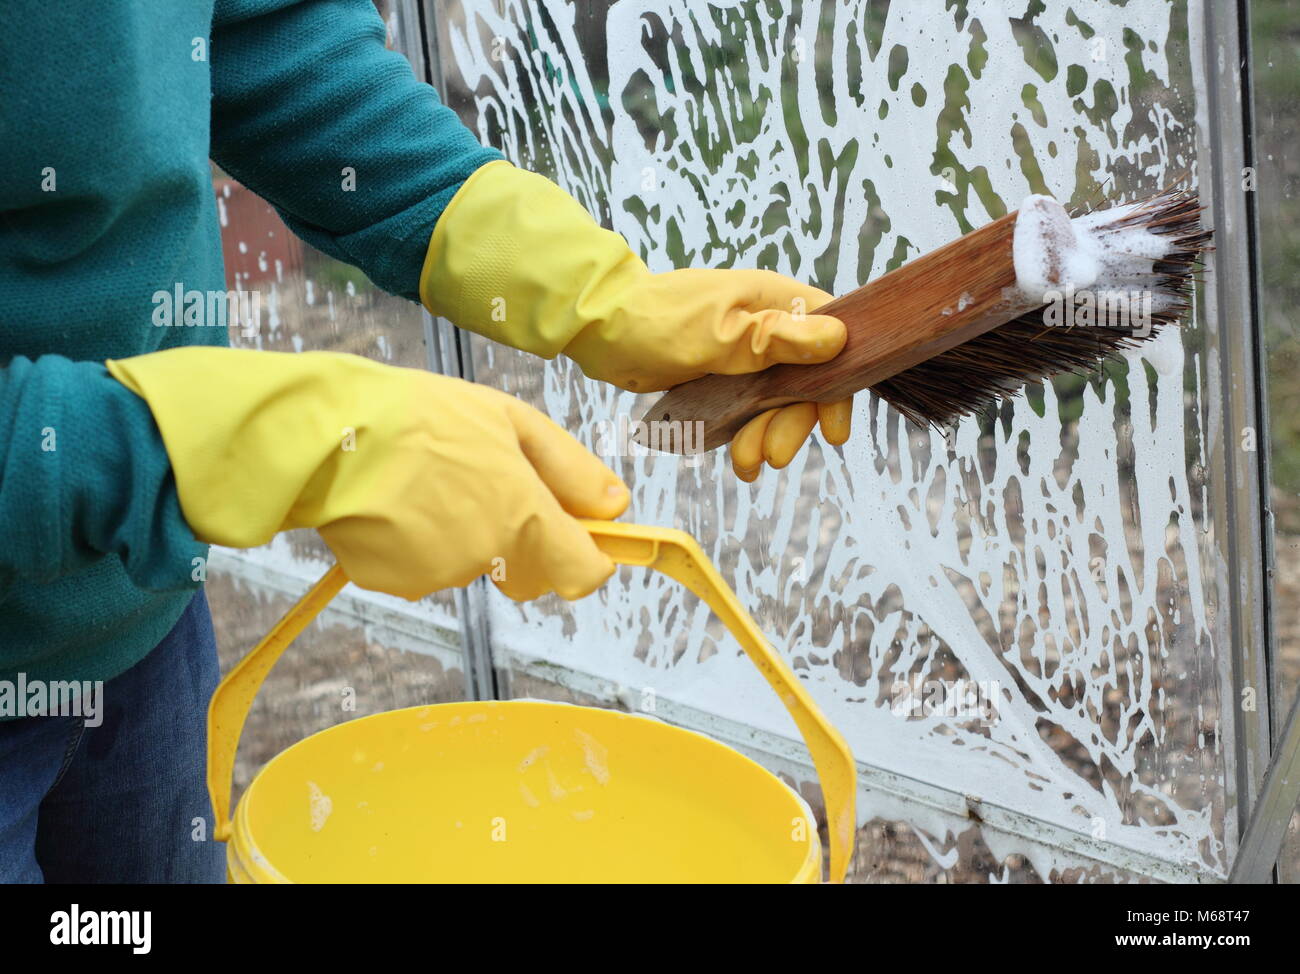 Les vitres sont lavées avec de l'eau chaude savonneuse en hiver pour enlever la crasse et aider à réduire le risque de maladies et ravageurs jardin , Royaume-Uni Banque D'Images